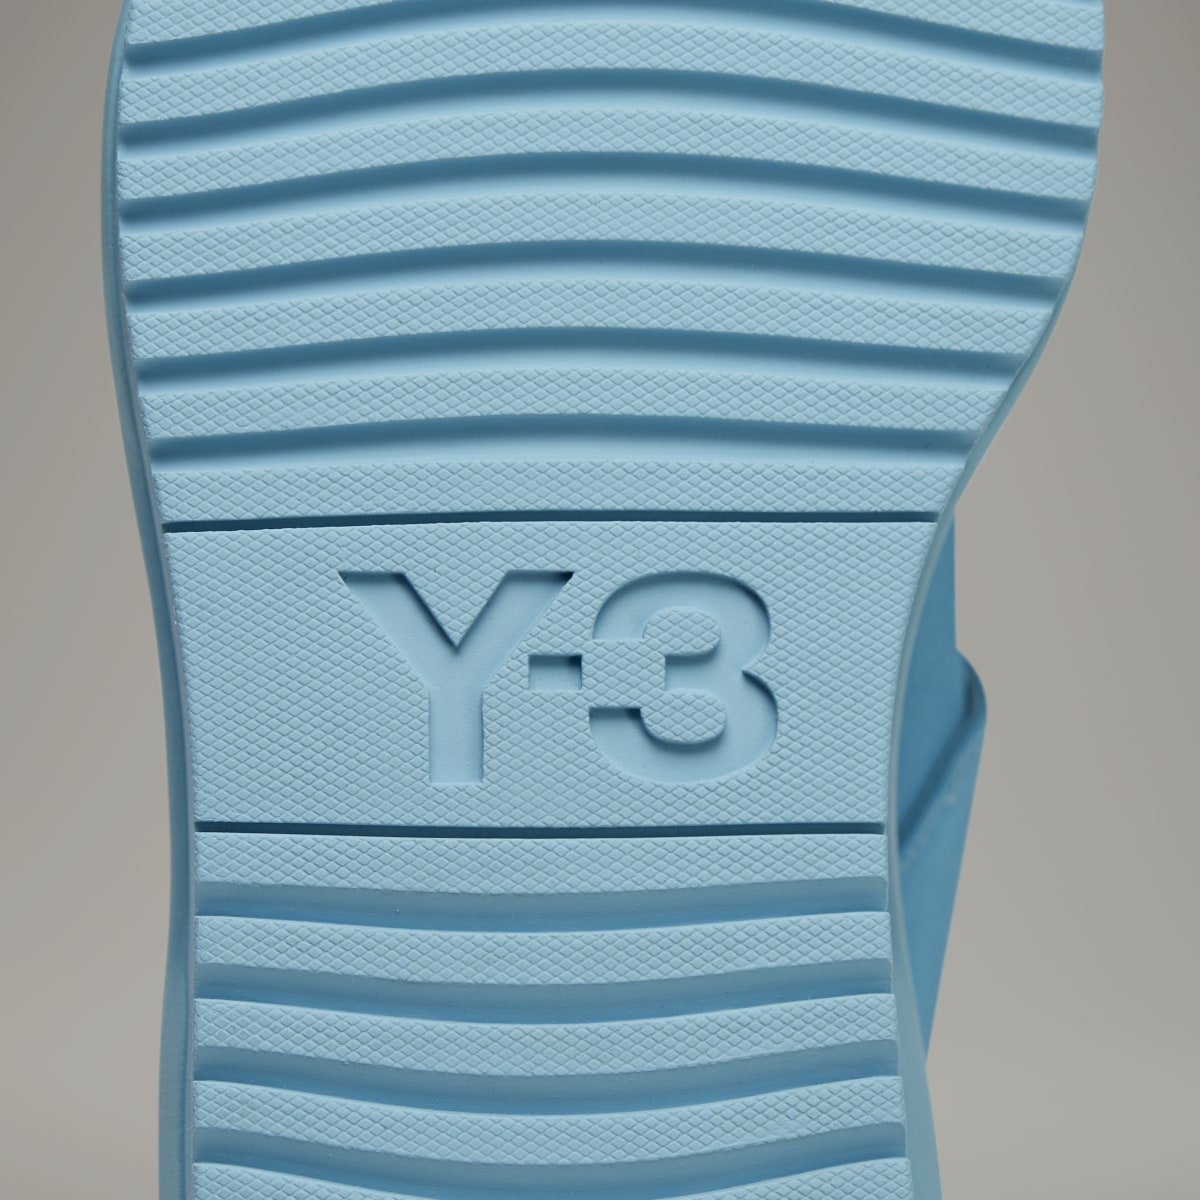 Adidas Y-3 Rivalry Sandals. 11